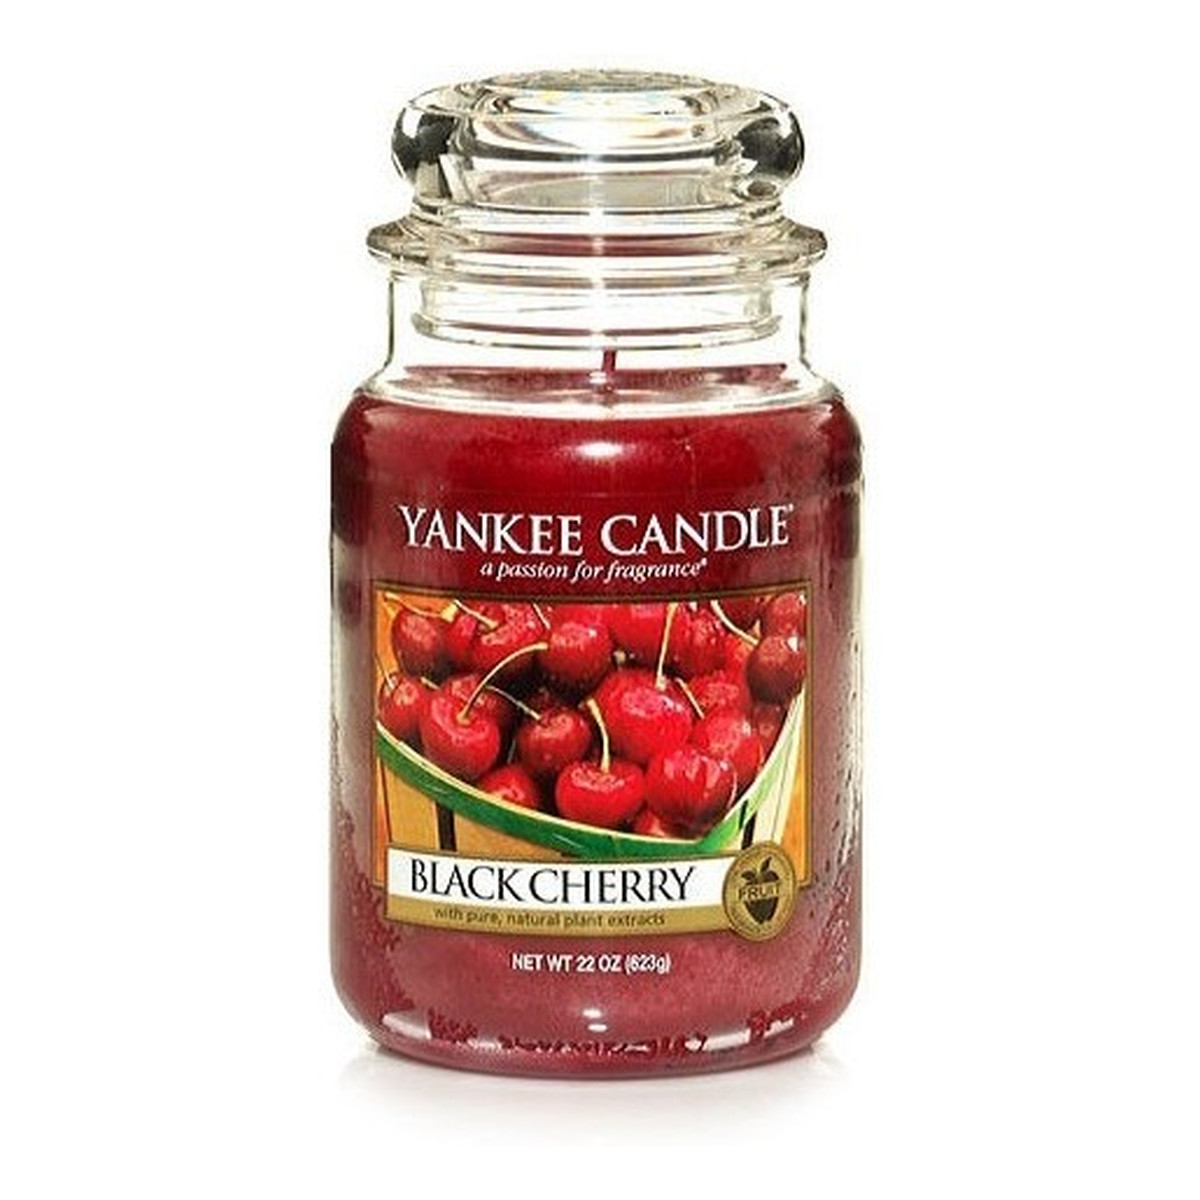 Yankee Candle Large Jar Duża świeczka zapachowa Black Cherry 623g